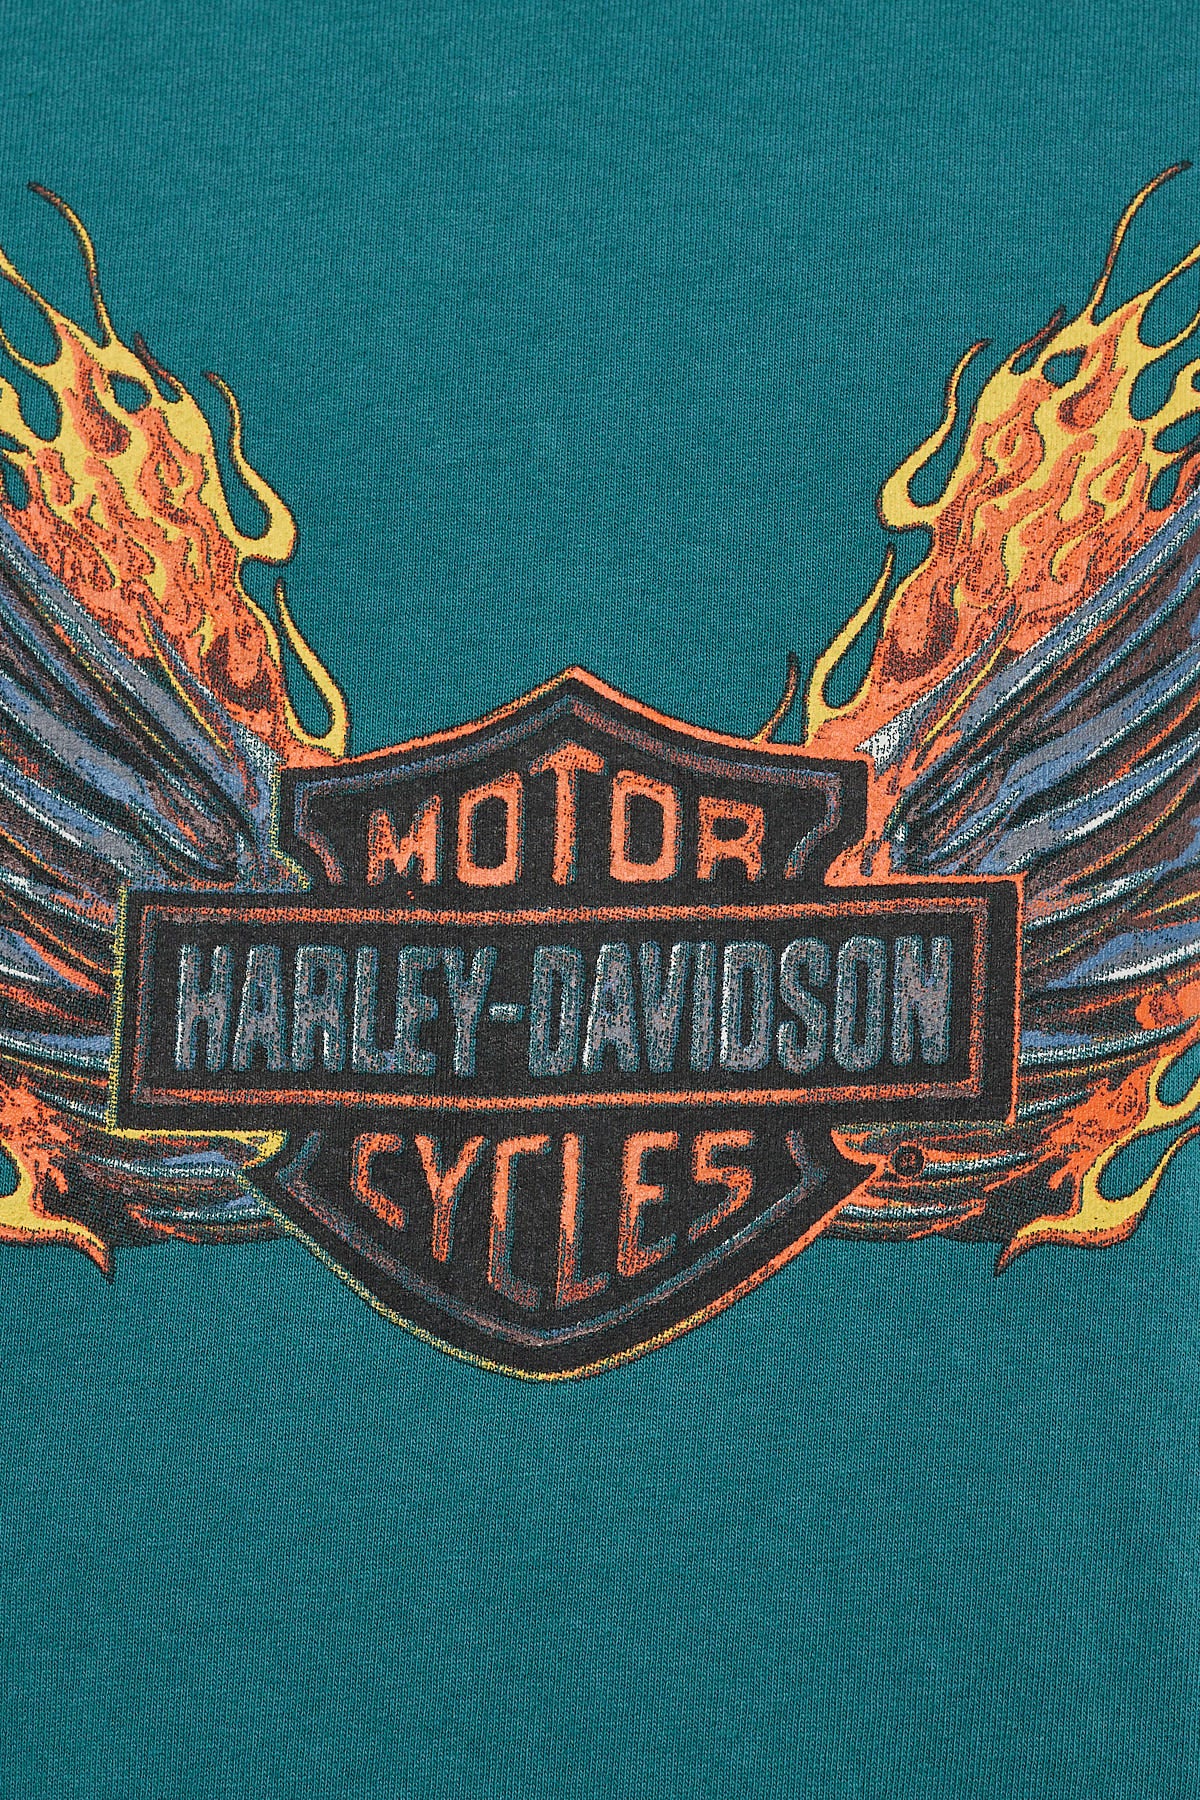 Harley-davidson Wings Bar & Shield Tee Vintage Teal